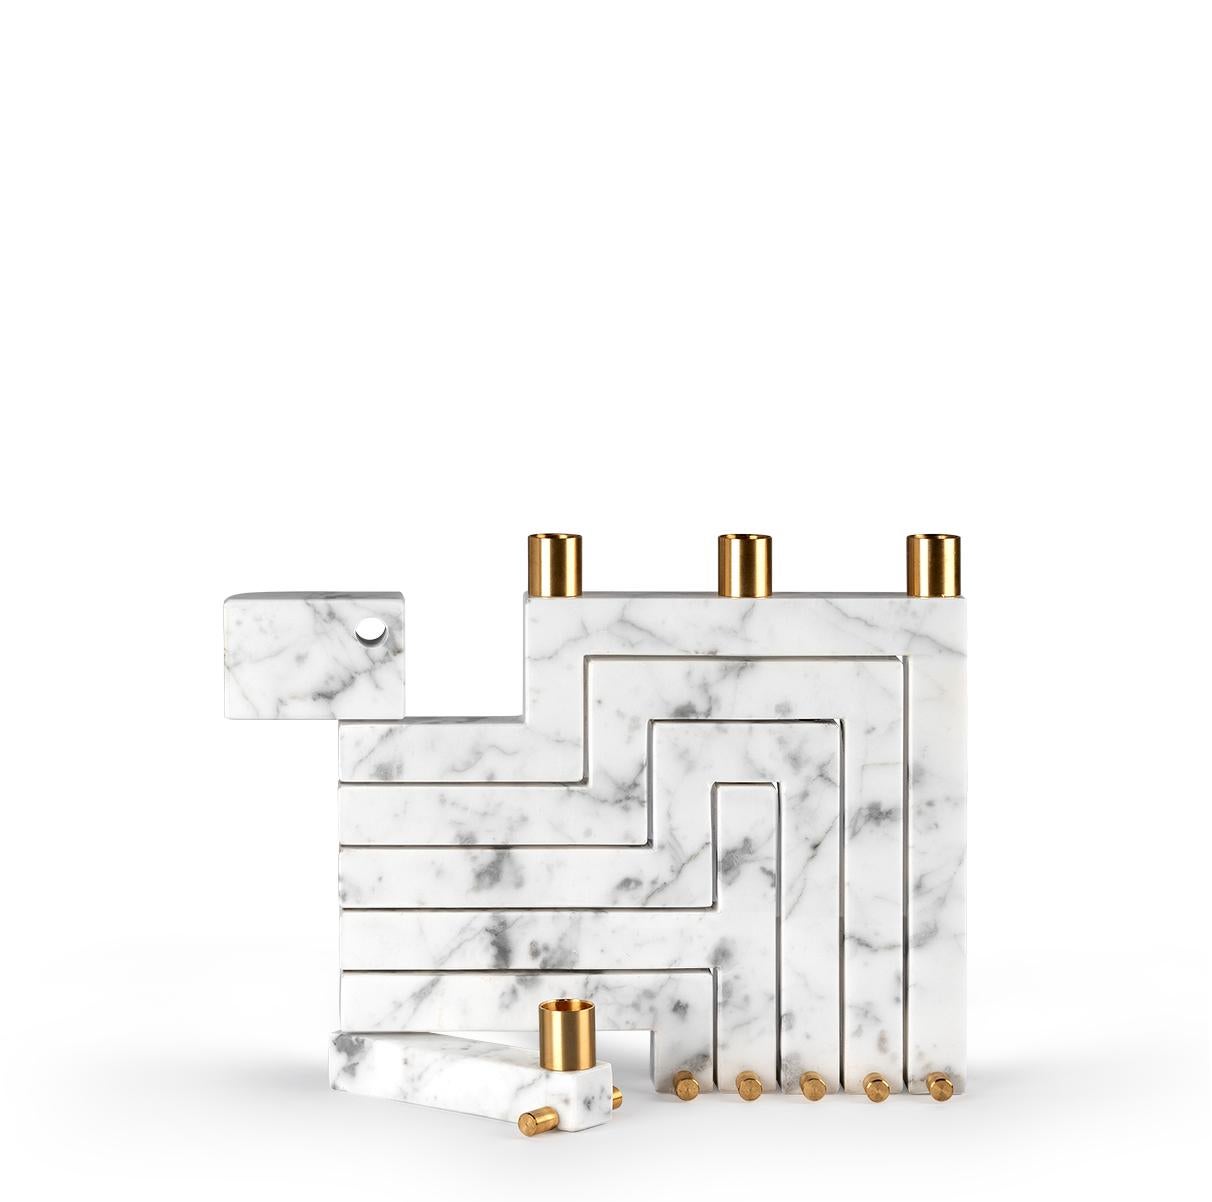 Der Kerzenhalter Vestalia aus weißem Bianco Carrara-Marmor und Messingdetails ist ein einzigartiges und auffälliges skulpturales Stück.
In geschlossenem Zustand wirkt der Kandelaber wie eine monolithische Marmorplatte. Mit ein paar kleinen